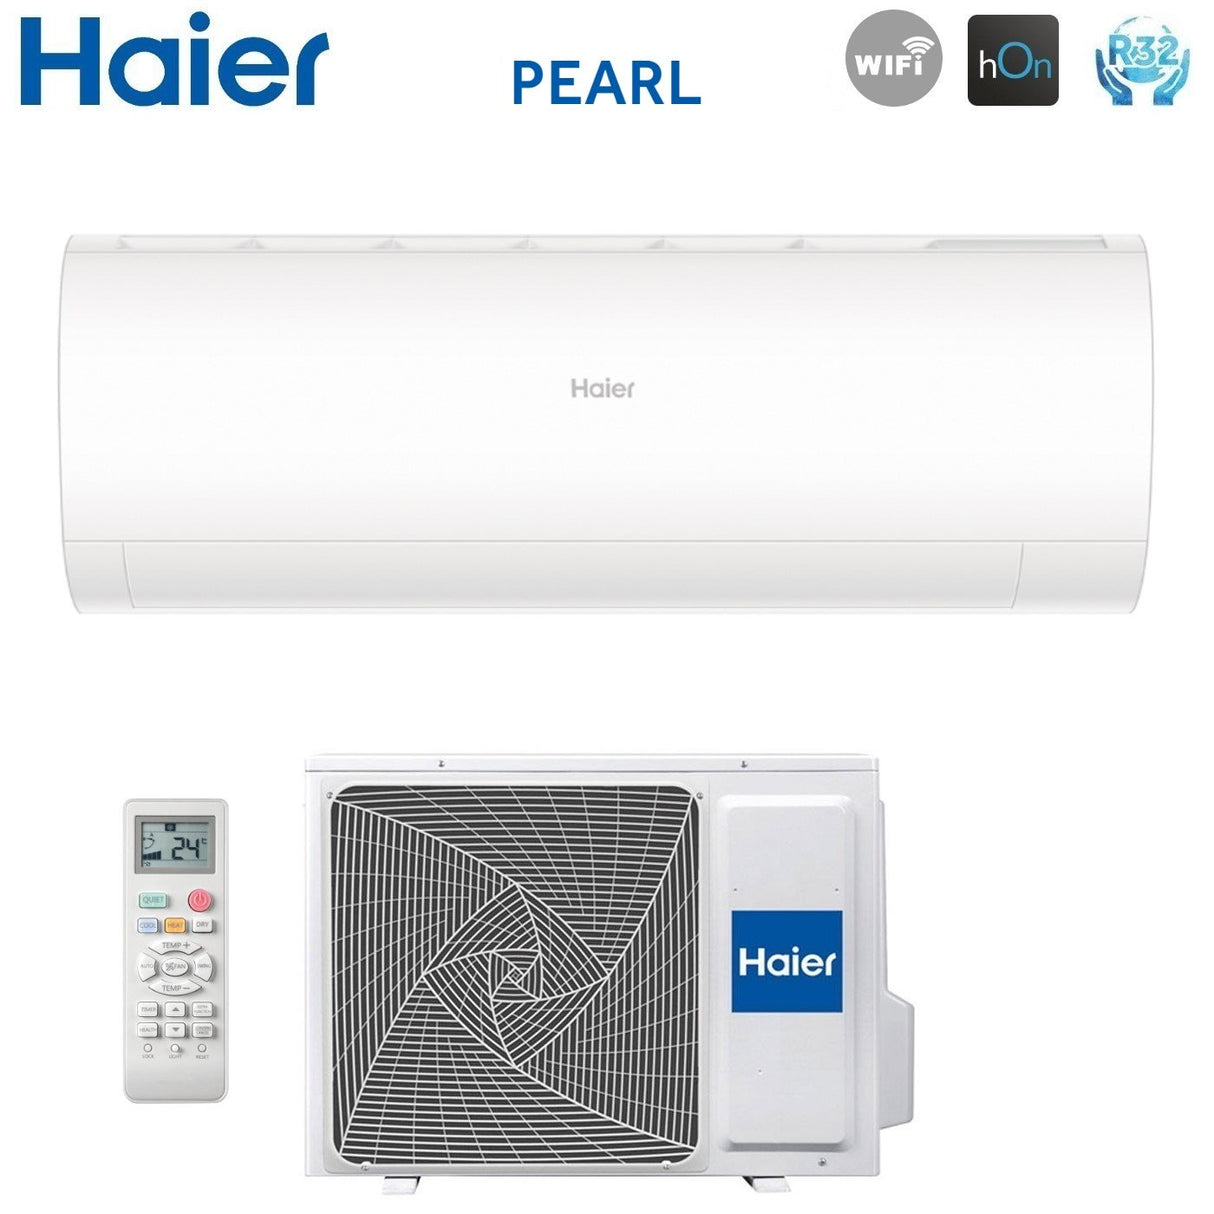 immagine-3-haier-climatizzatore-condizionatore-haier-inverter-serie-pearl-24000-btu-as68pdahra-r-32-wi-fi-integrato-aa